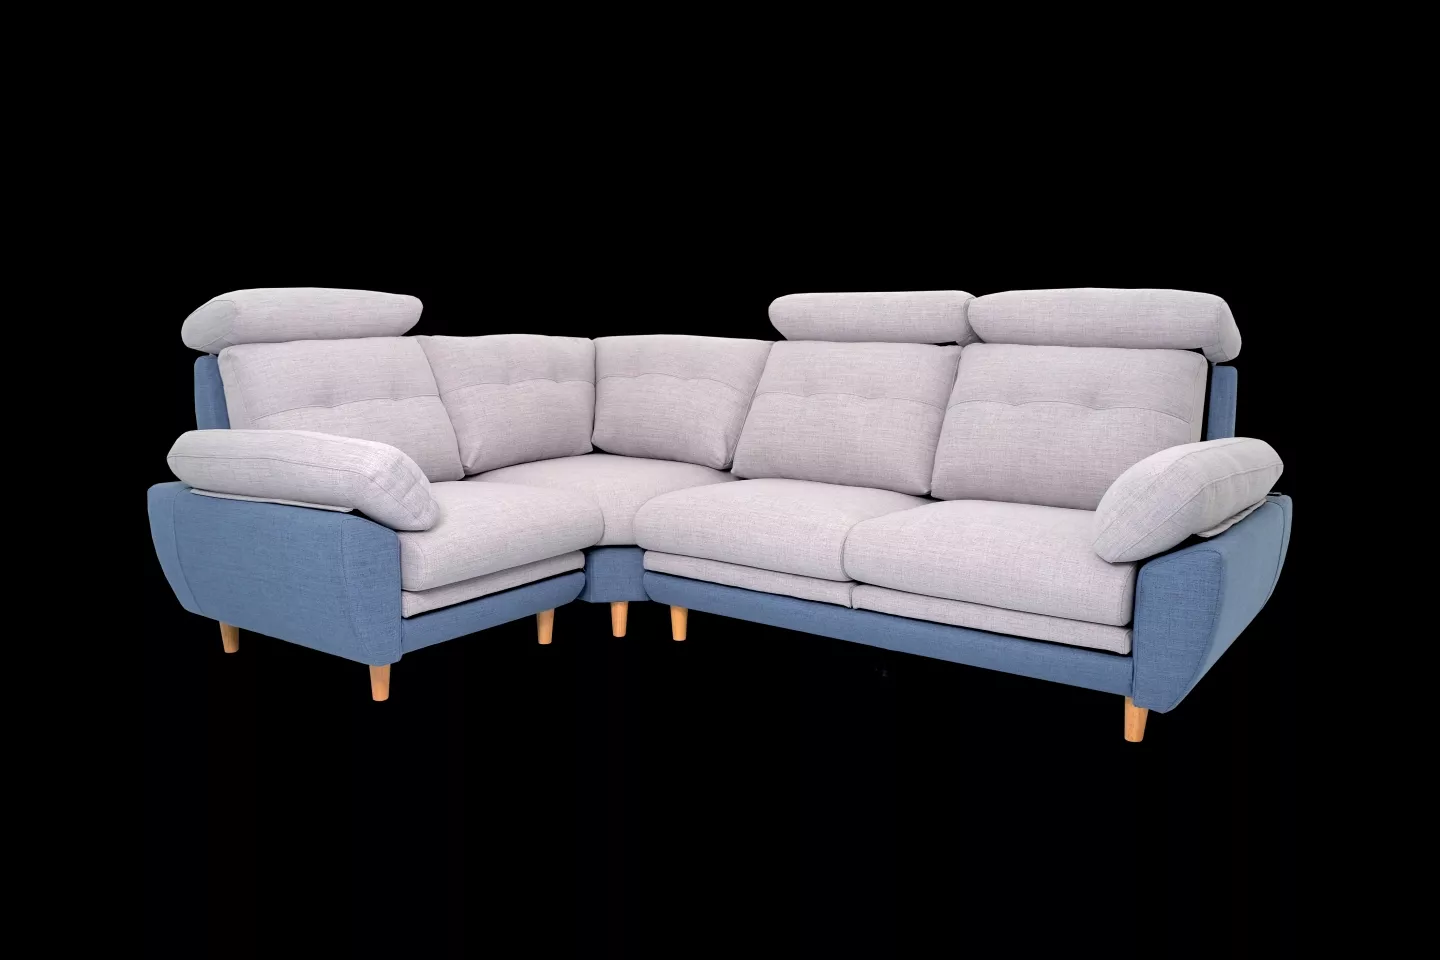 棉麻布沙發,型號蒂尼TINI T53型,海灣型沙發實體沙發照片